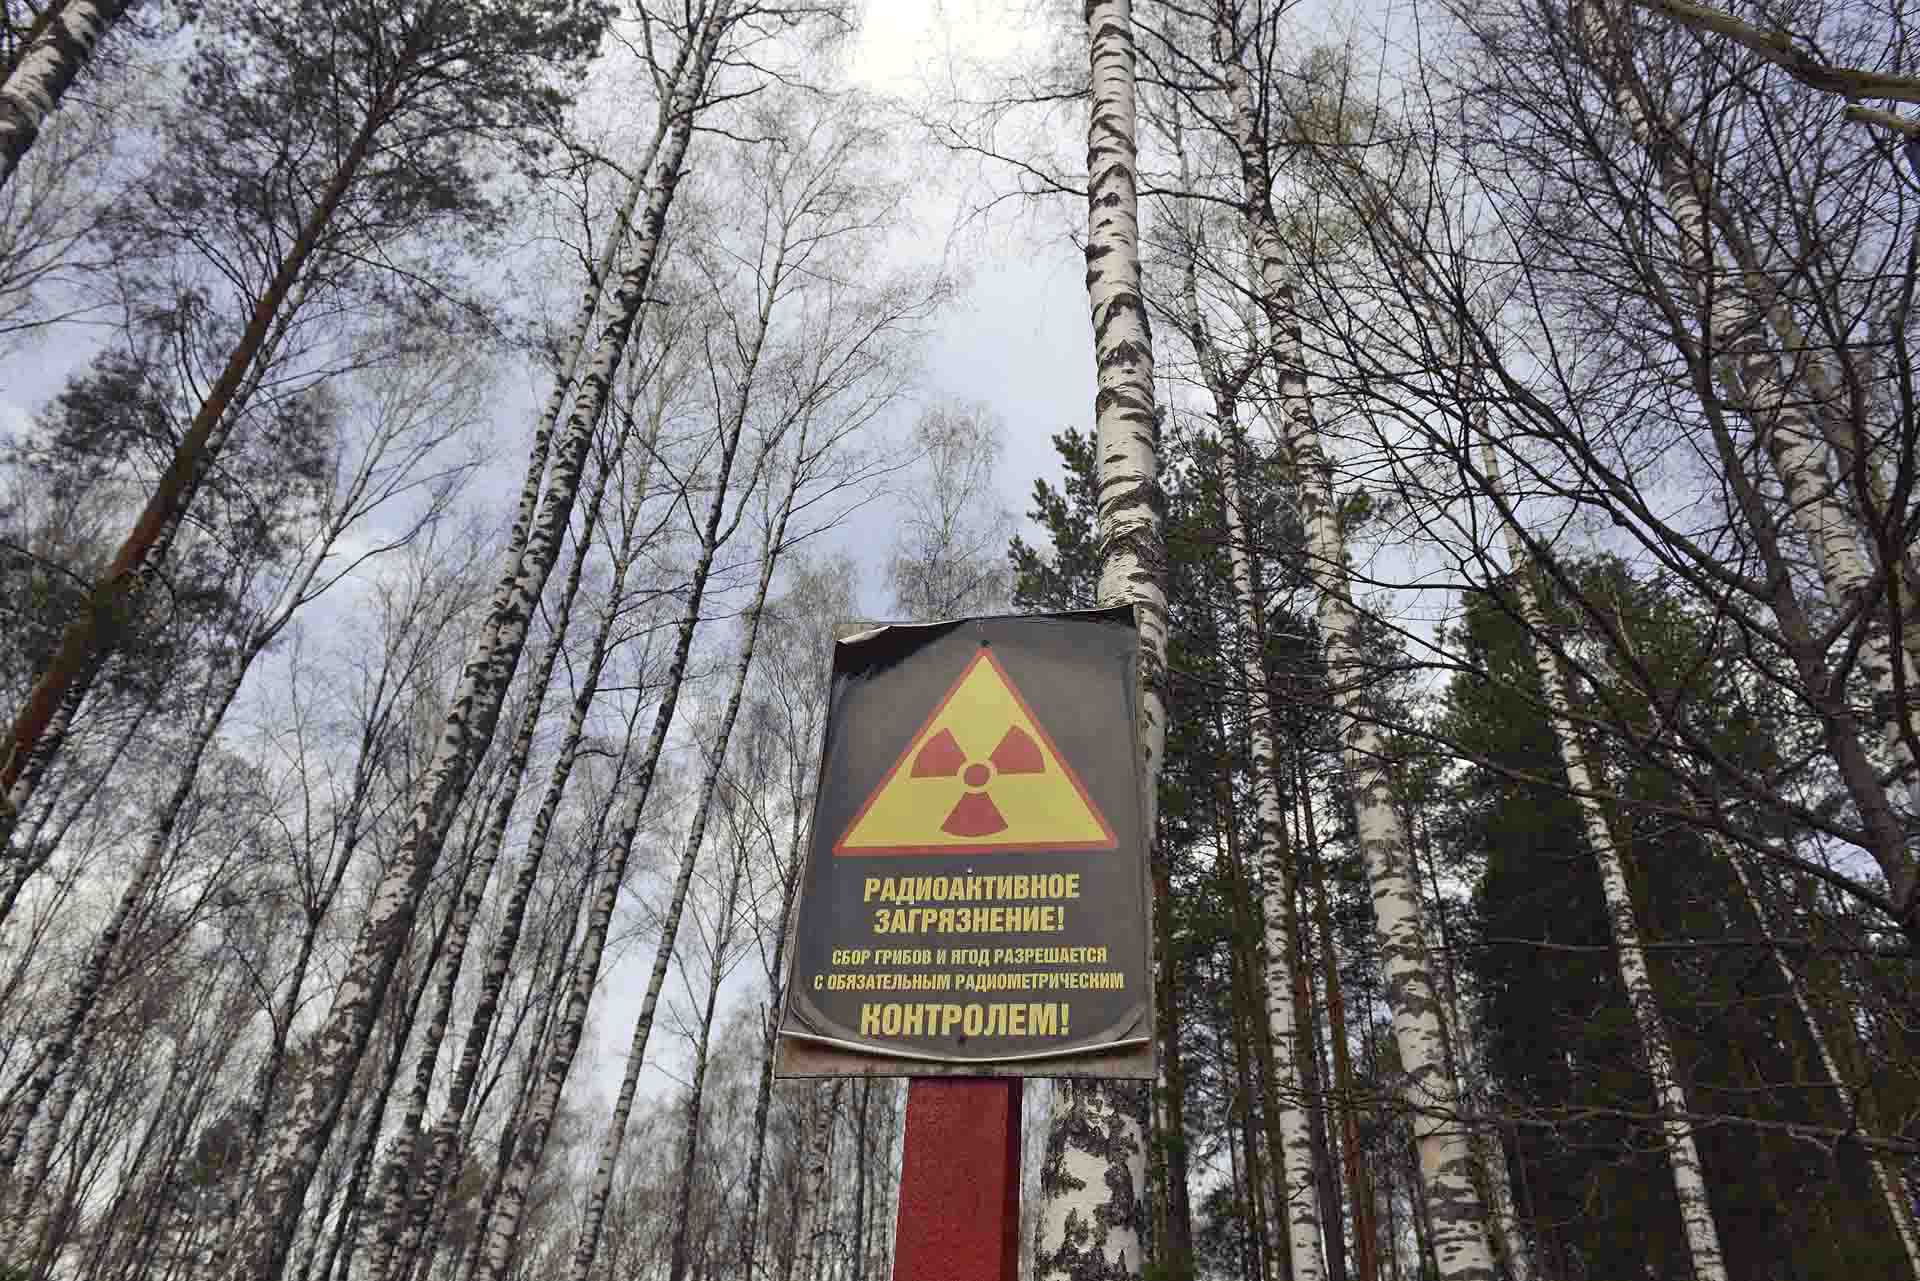 Además de en toda la zona de exclusión, a lo largo de toda el área afectada de la región de Gomel, en el sureste de Bielorrusia, existen cuantiosos cárteles que indican la radiación / Foto: Alfons Rodríguez